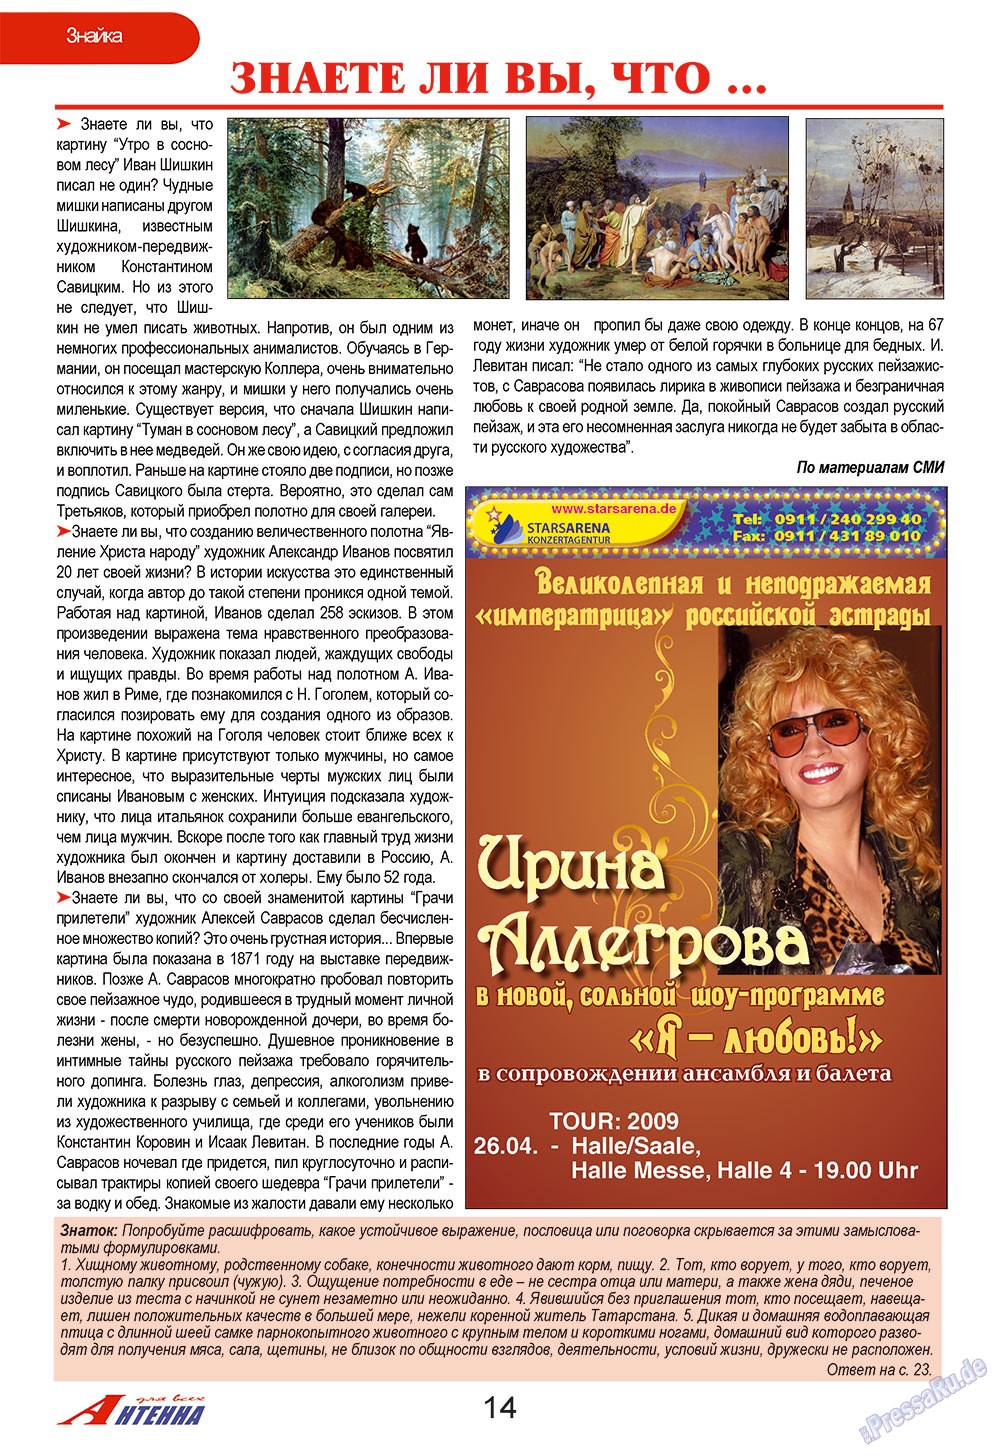 Antenne (Zeitschrift). 2009 Jahr, Ausgabe 3, Seite 14